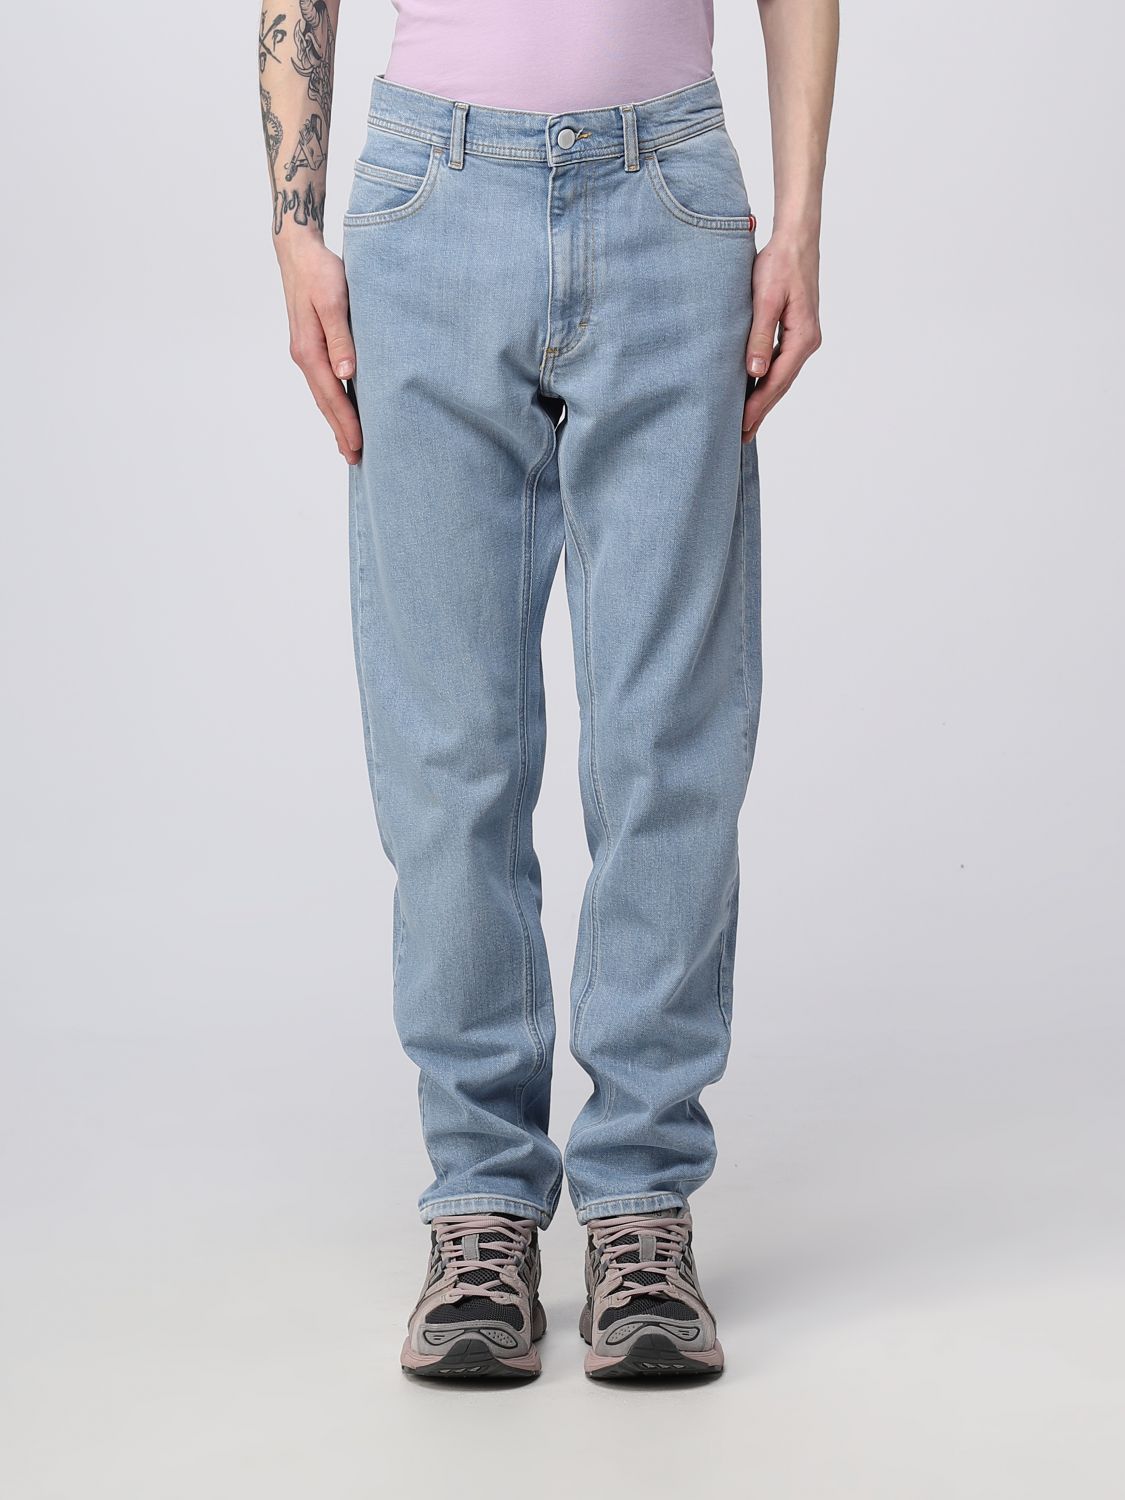 jeans amish men colour blue